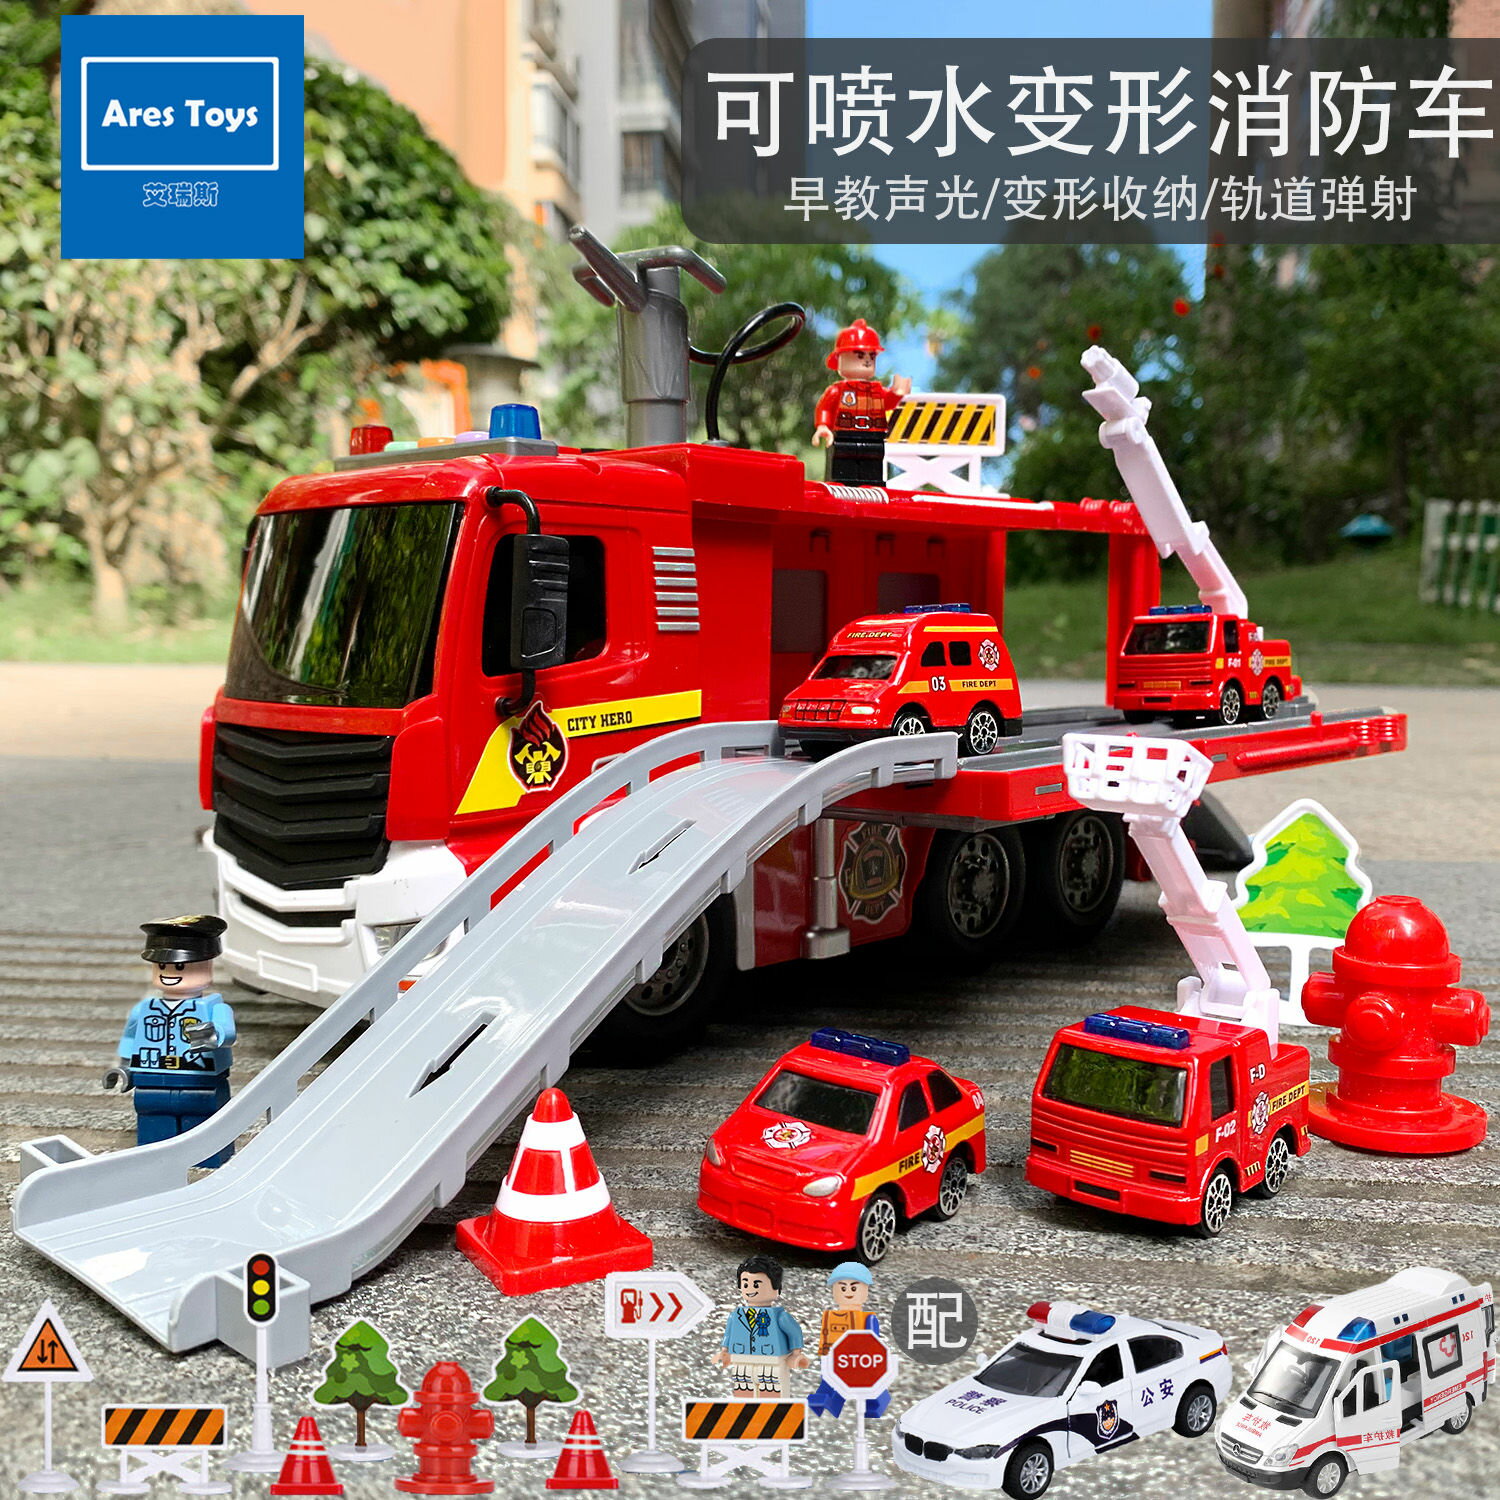 優購生活-超大號可噴水消防車玩具兒童消防員套裝云梯車可變形收納男孩寶寶玩具車 推土車 兒童玩具 變形車 雙十一搶先購